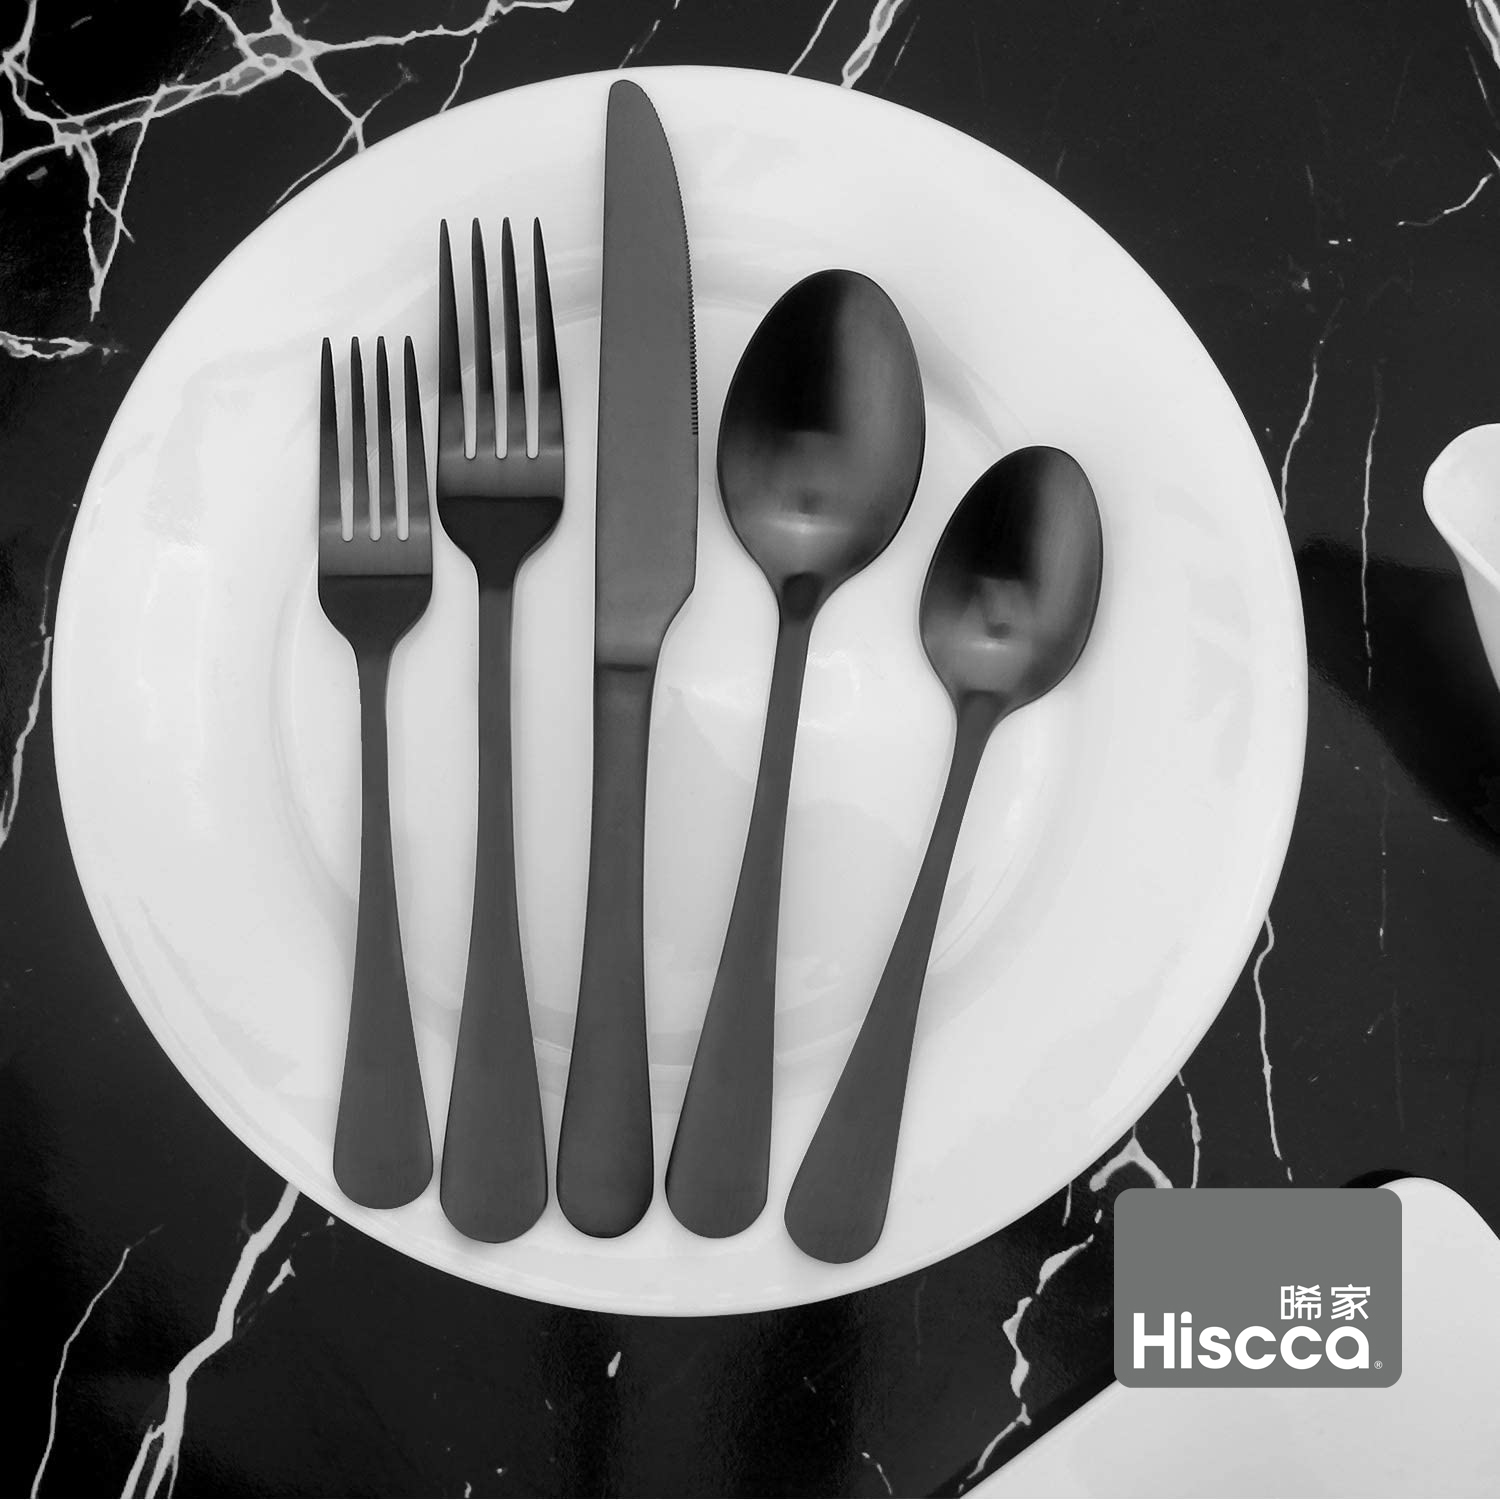 Hiscca 法国牛排刀叉套装品牌专业定制牛排餐具家用西餐餐具套装